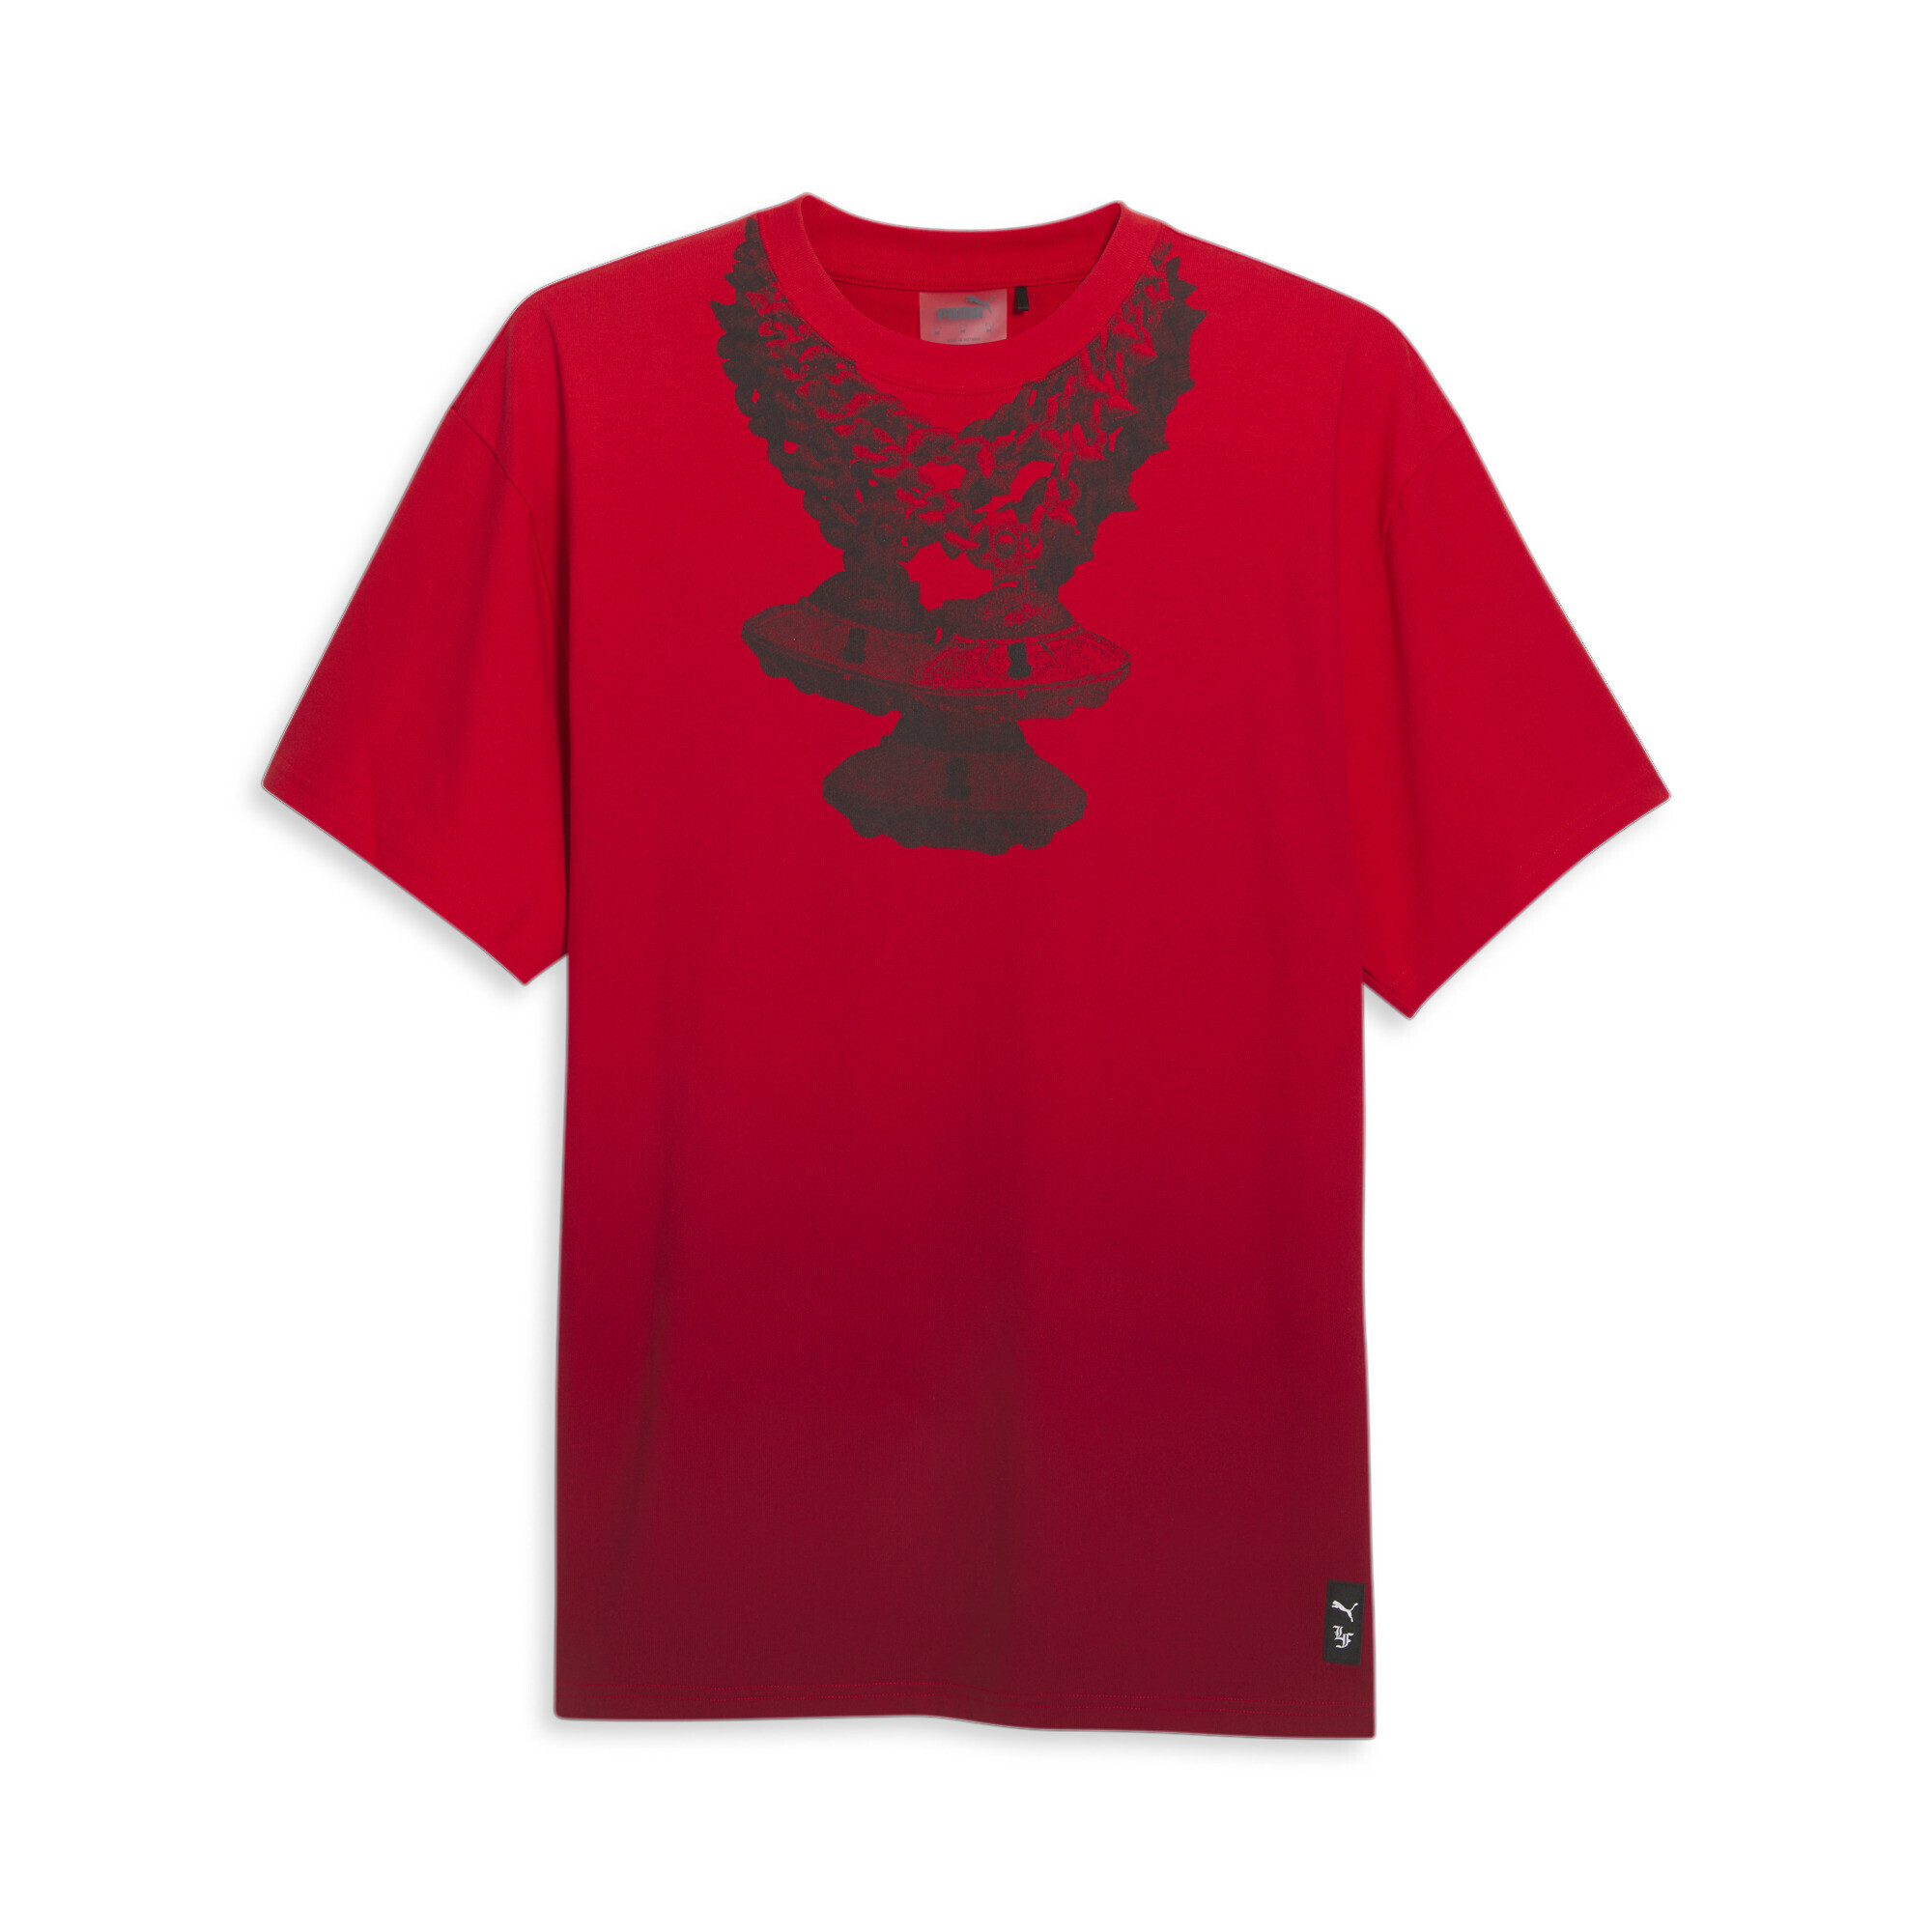 Men's PUMA X LAFRANCÃ T-Shirt In Red, Size Medium